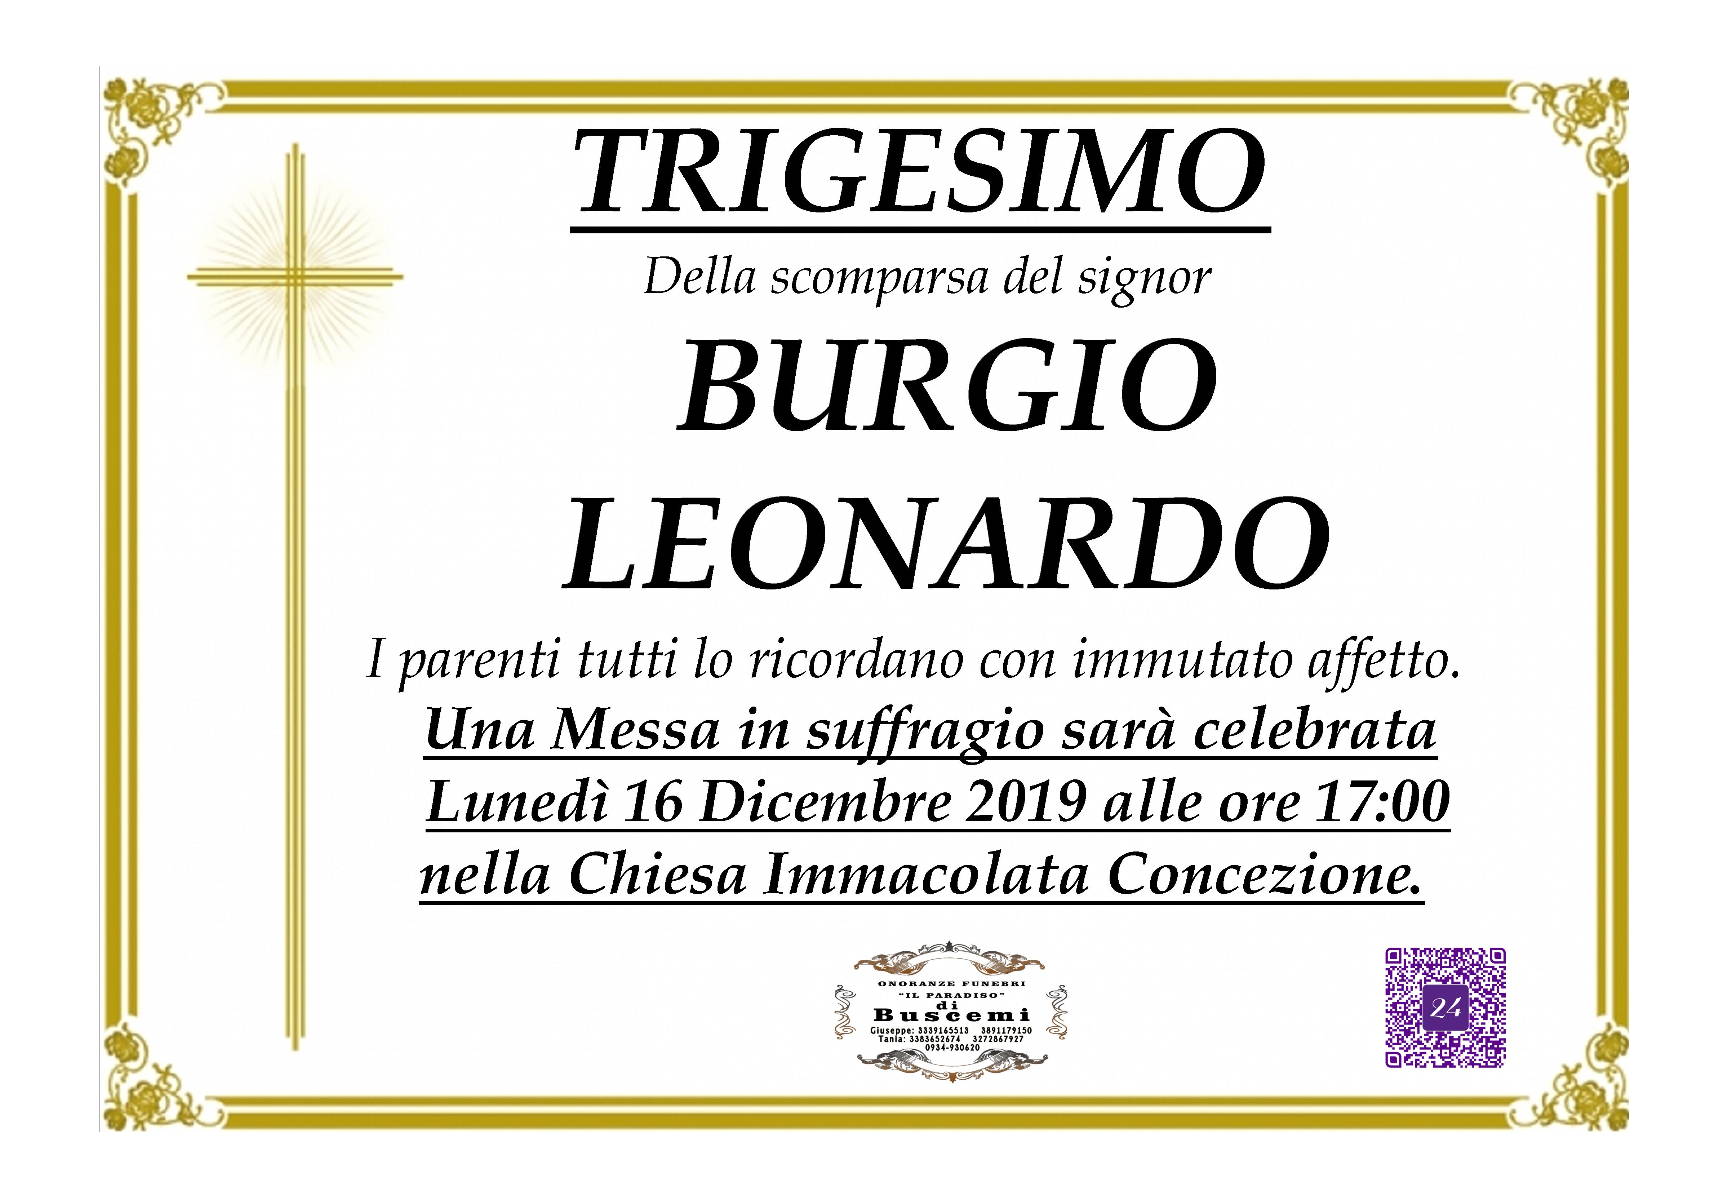 Leonardo Burgio